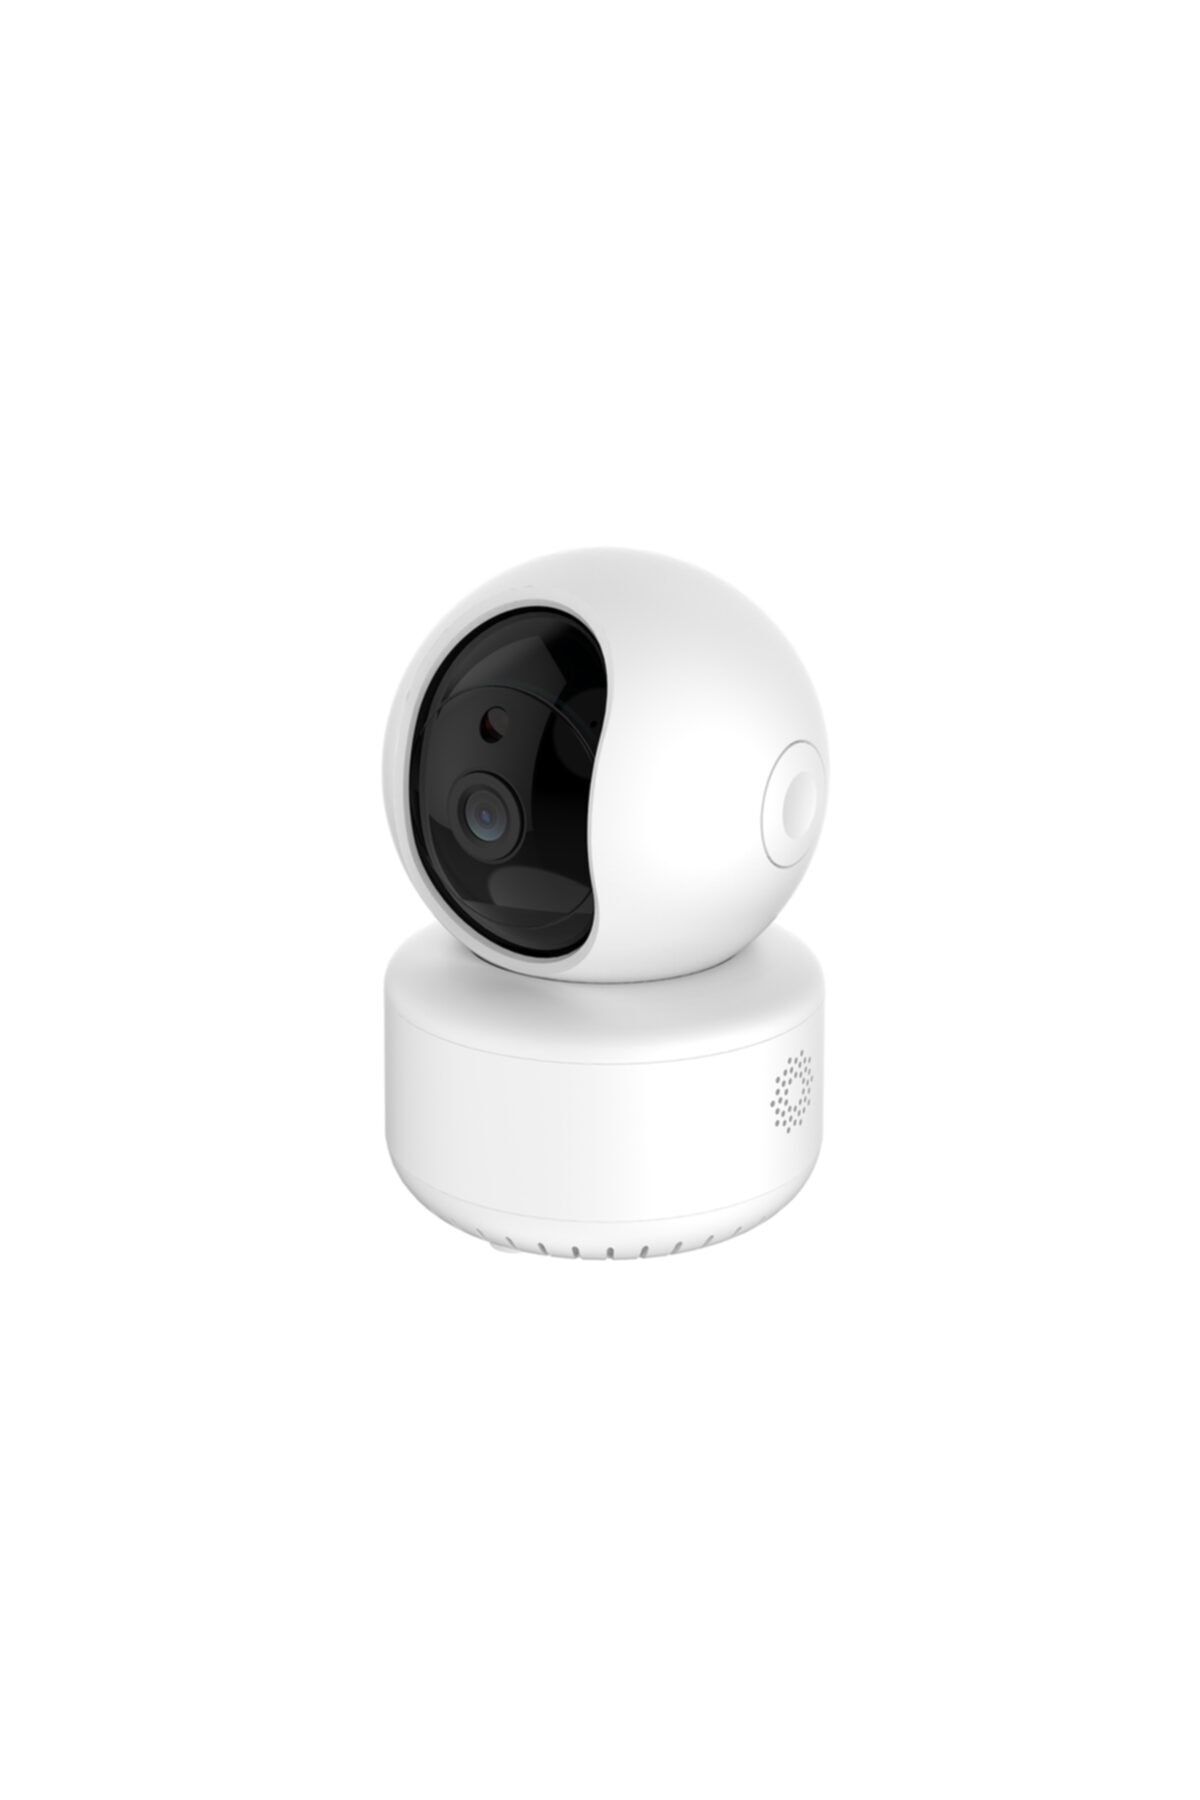 NARGO Ape Yeni Model 360 Derece Hareket Sensörlü Gerçek 2mp 1080 P Ip Güvenlik Kamerası